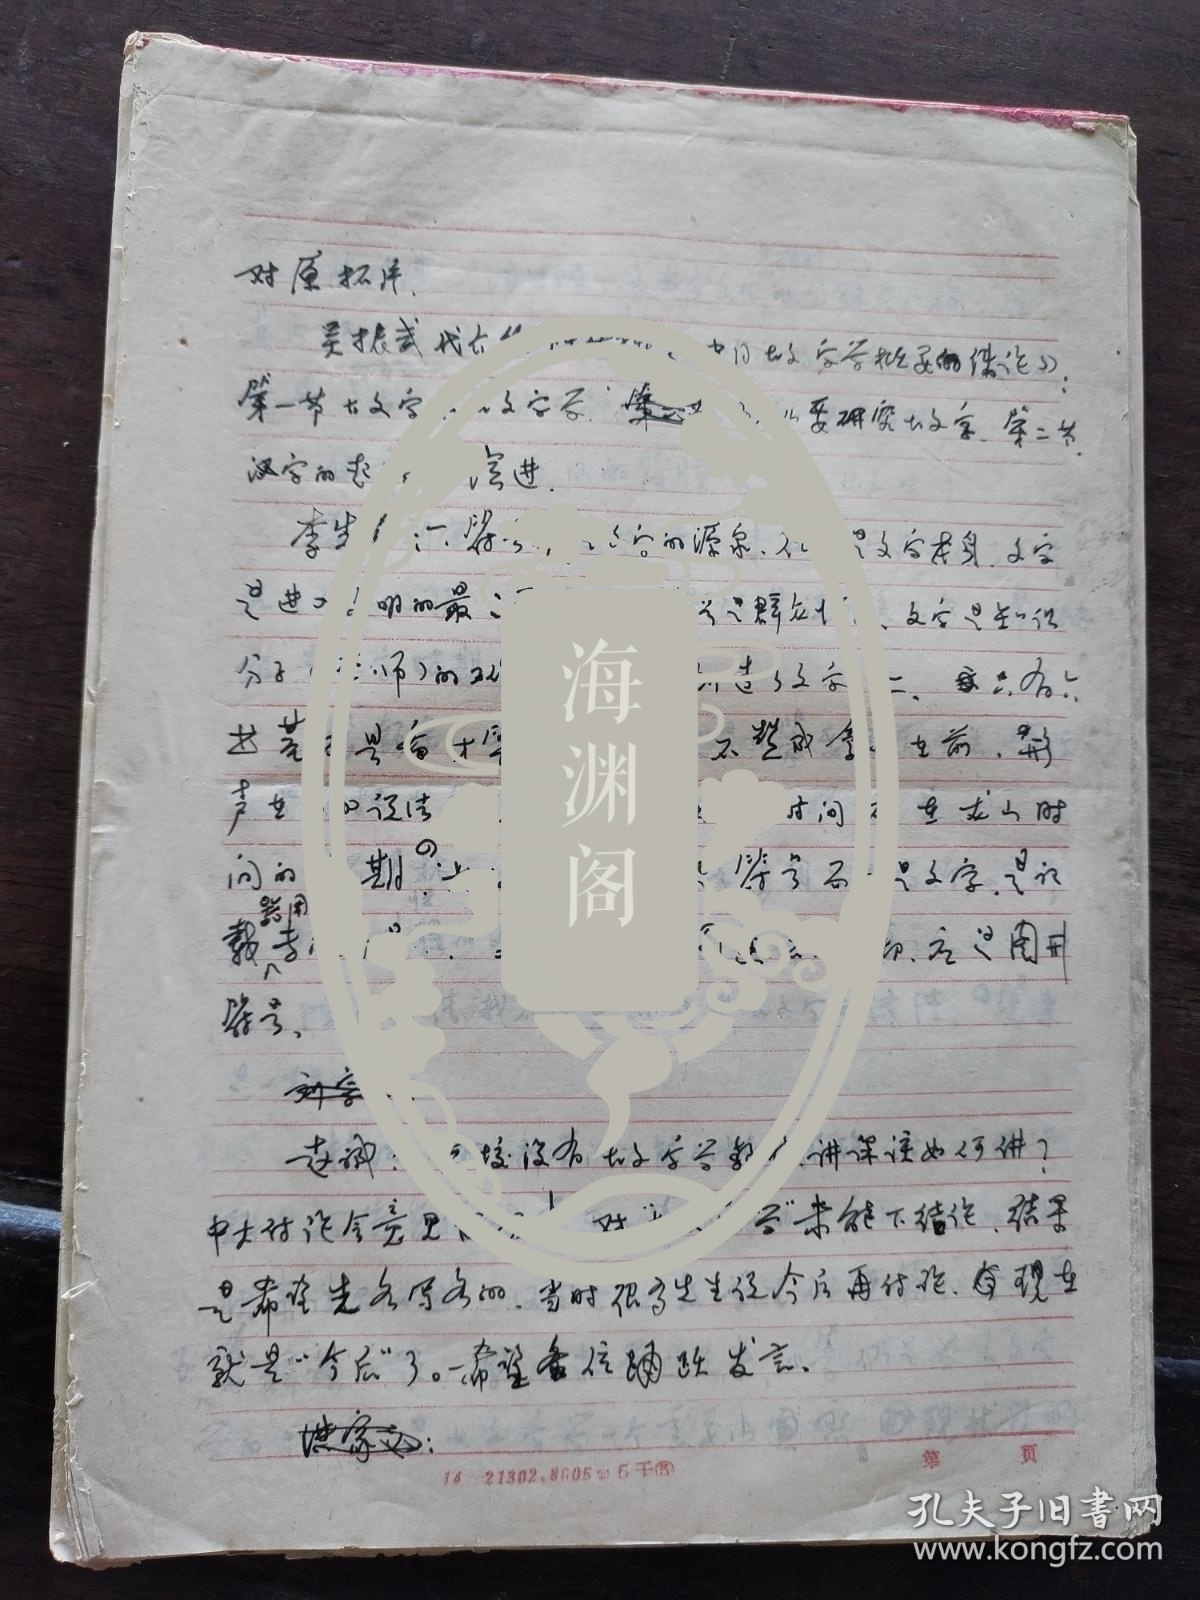 广东省中国语言学会1996-1997年学术年会议程表 手稿